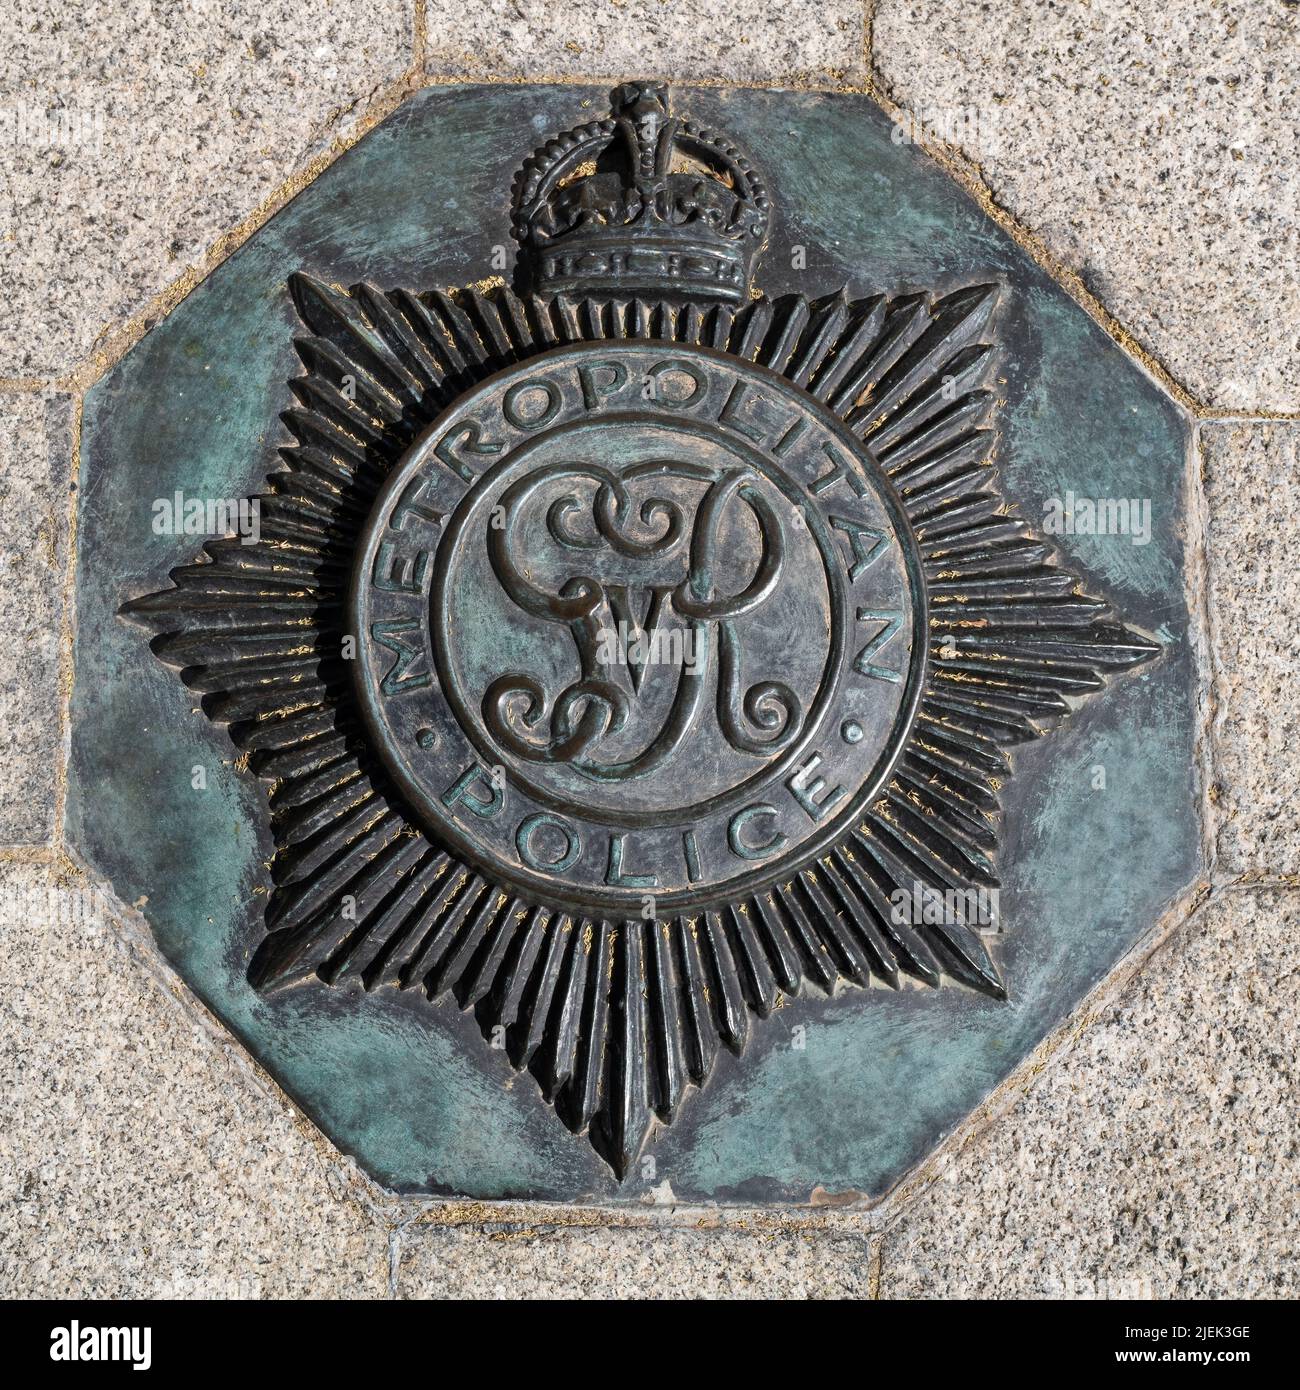 Londra, UK - 16th Aprile 2022: Corona emblam per il servizio Metropolitan Police, incorporato nel marciapiede all'esterno del New Scotland Yard Building, VI Foto Stock